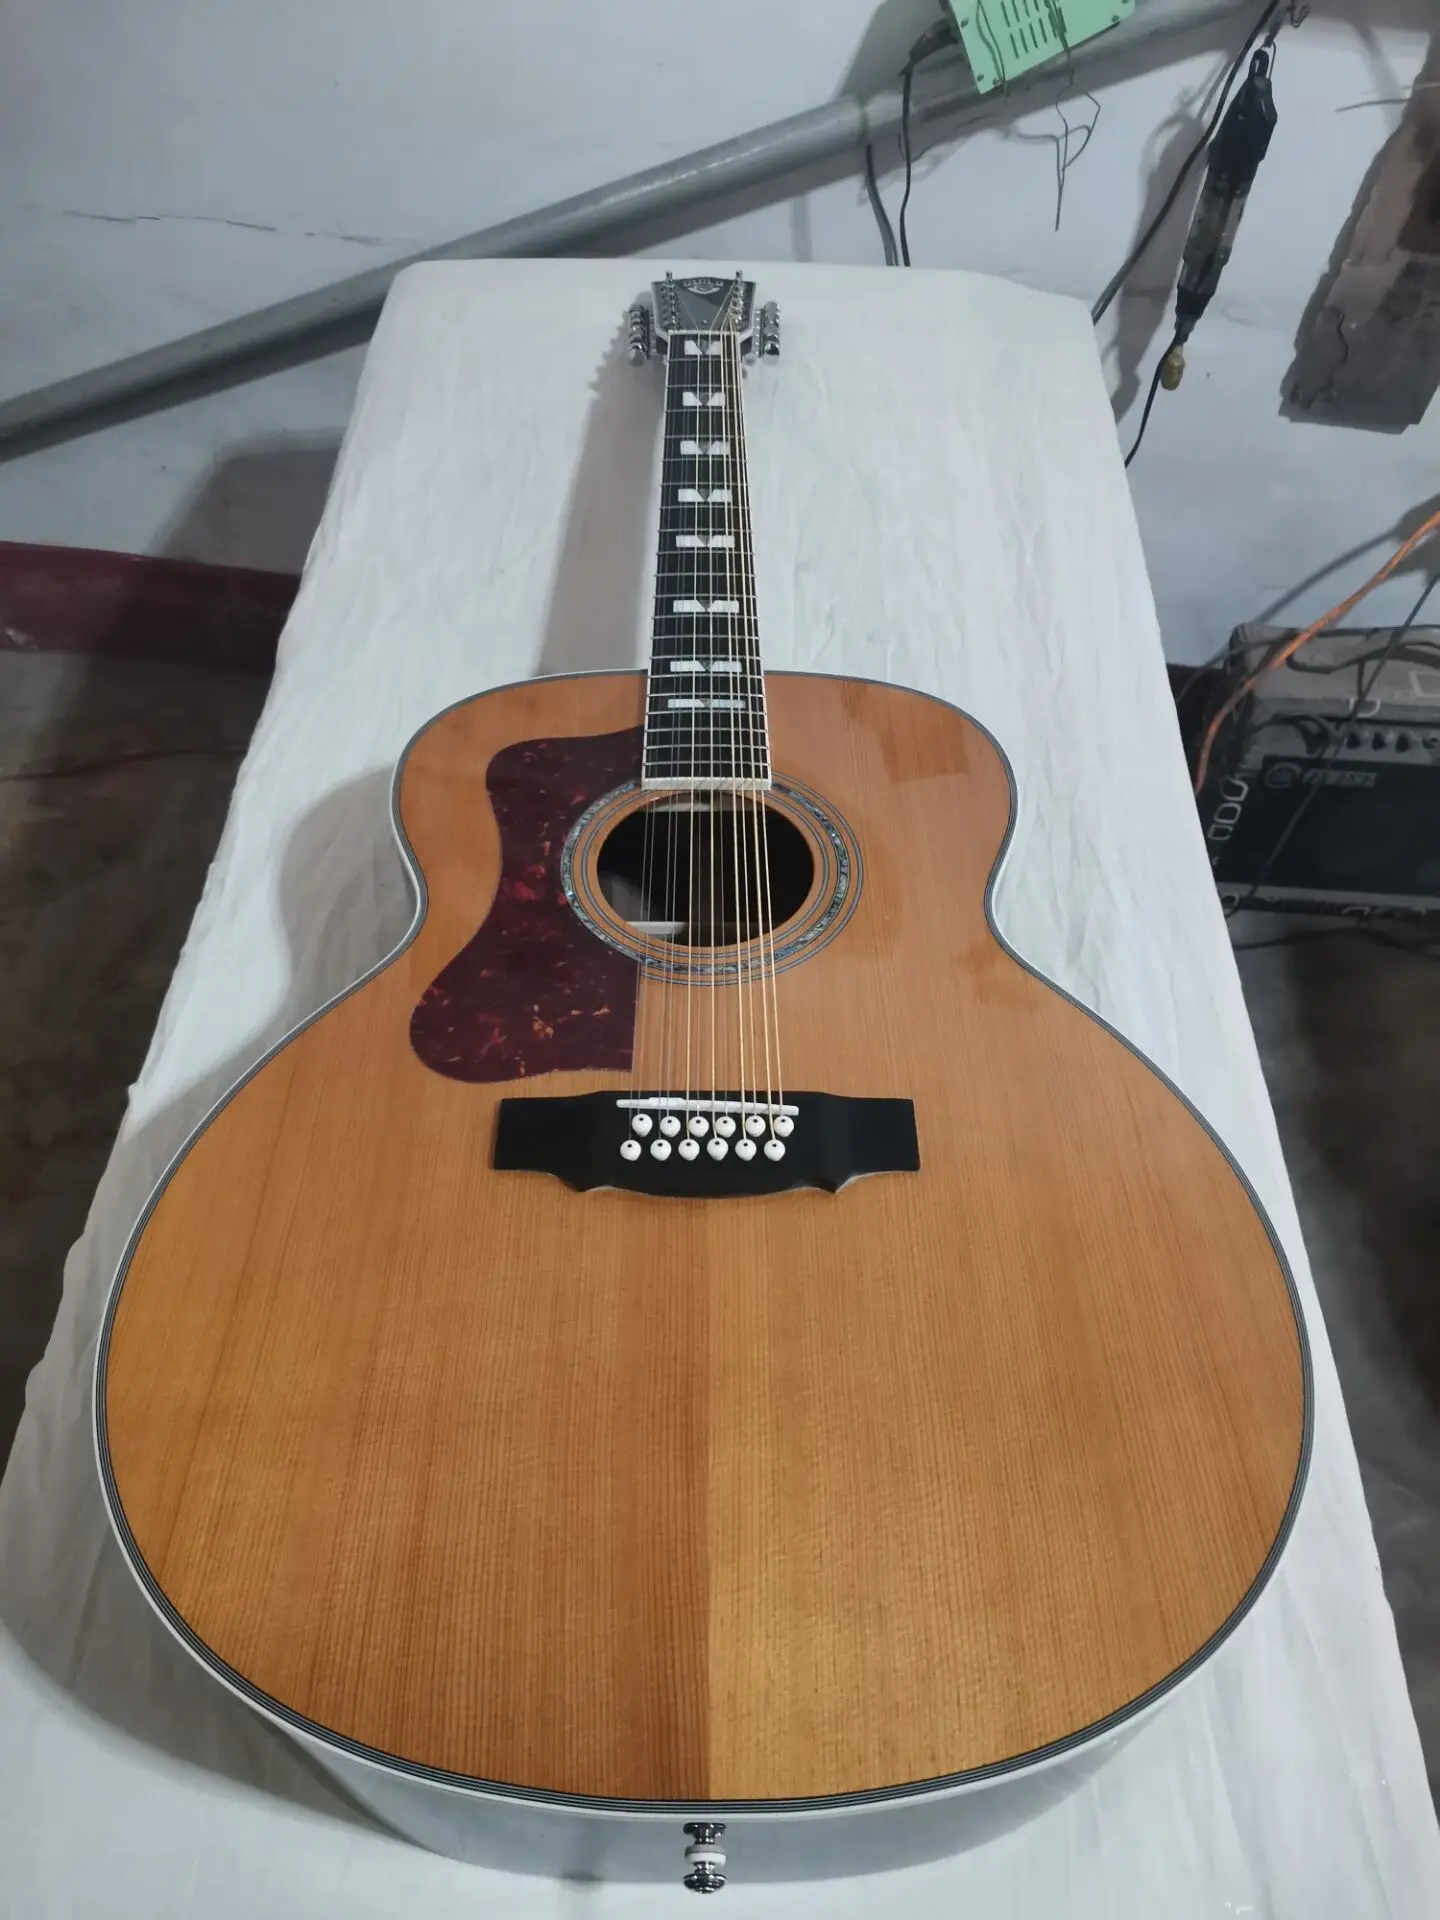 besplatna dostava crno stablo F512 div gitara ljevak 12 струнная akustična snažna električna gitara stil ceh ljevak gitara